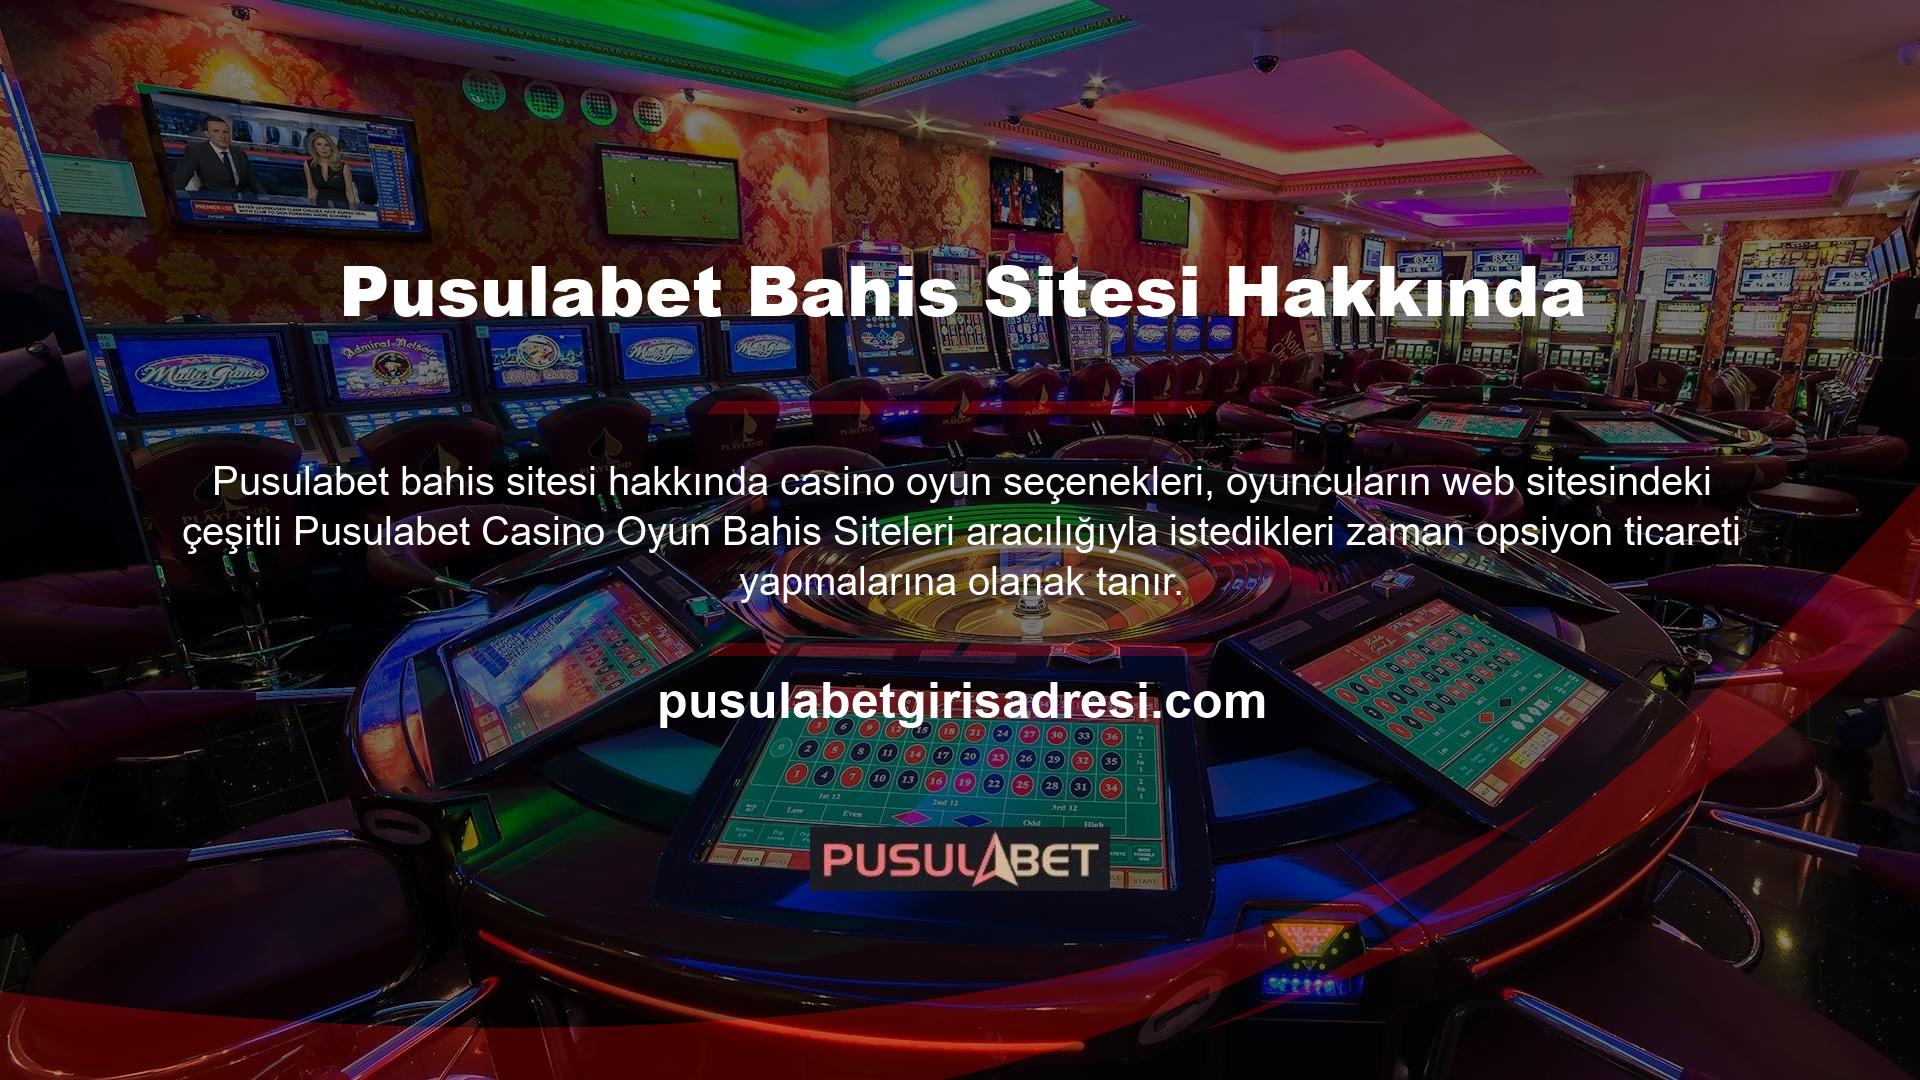 Pusulabet Casino'nun kazanılabilir olup olmadığı sorusu, oyuncuların casino oyunu seçenekleriyle işlem yapmadan önce temel olarak bilmek istedikleri bir sorudur